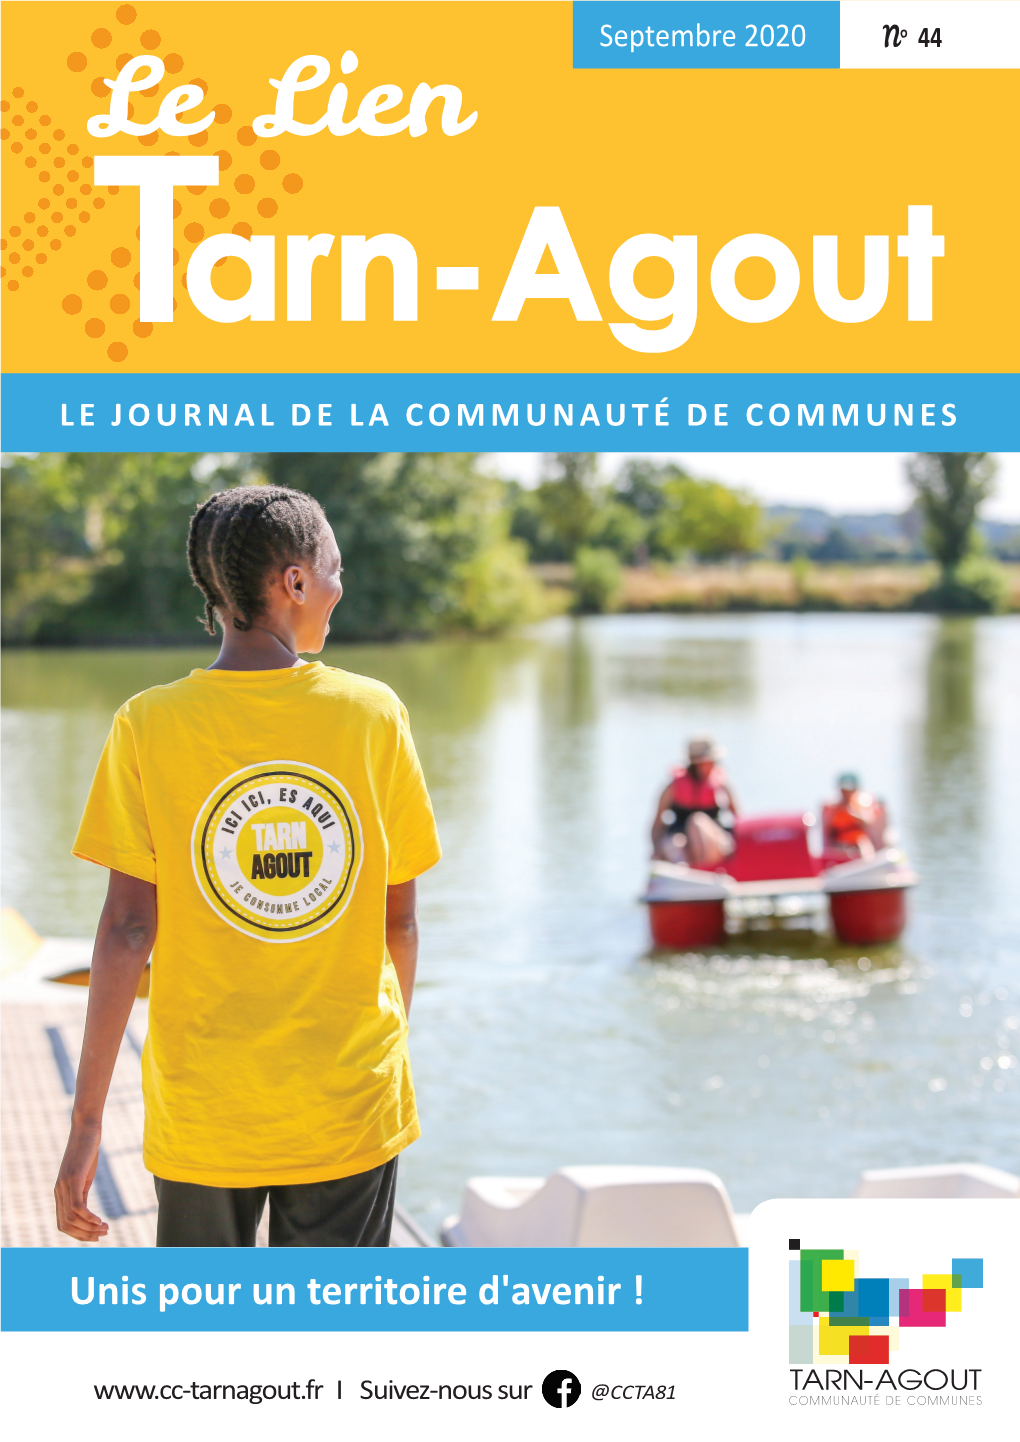 Le Lien Tarn-Agout LE JOURNAL DE LA COMMUNAUTÉ DE COMMUNES